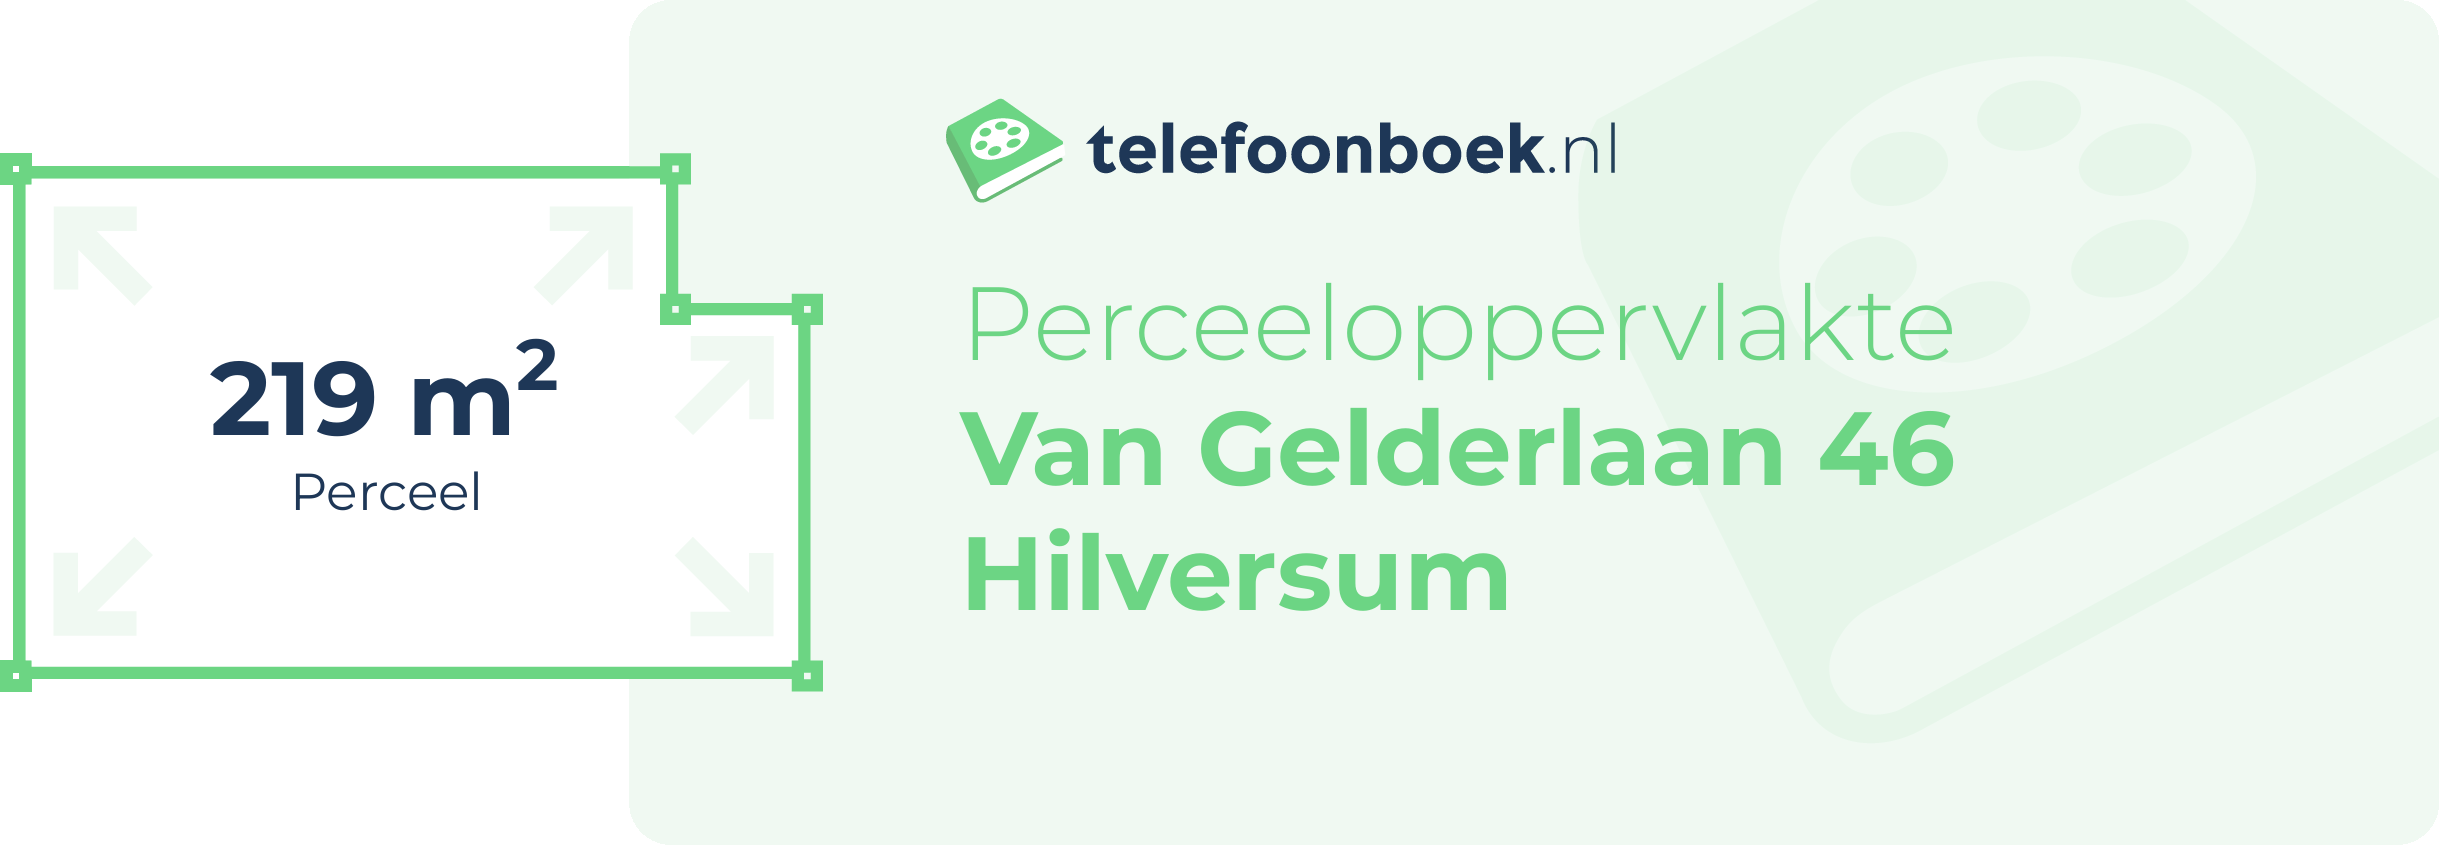 Perceeloppervlakte Van Gelderlaan 46 Hilversum